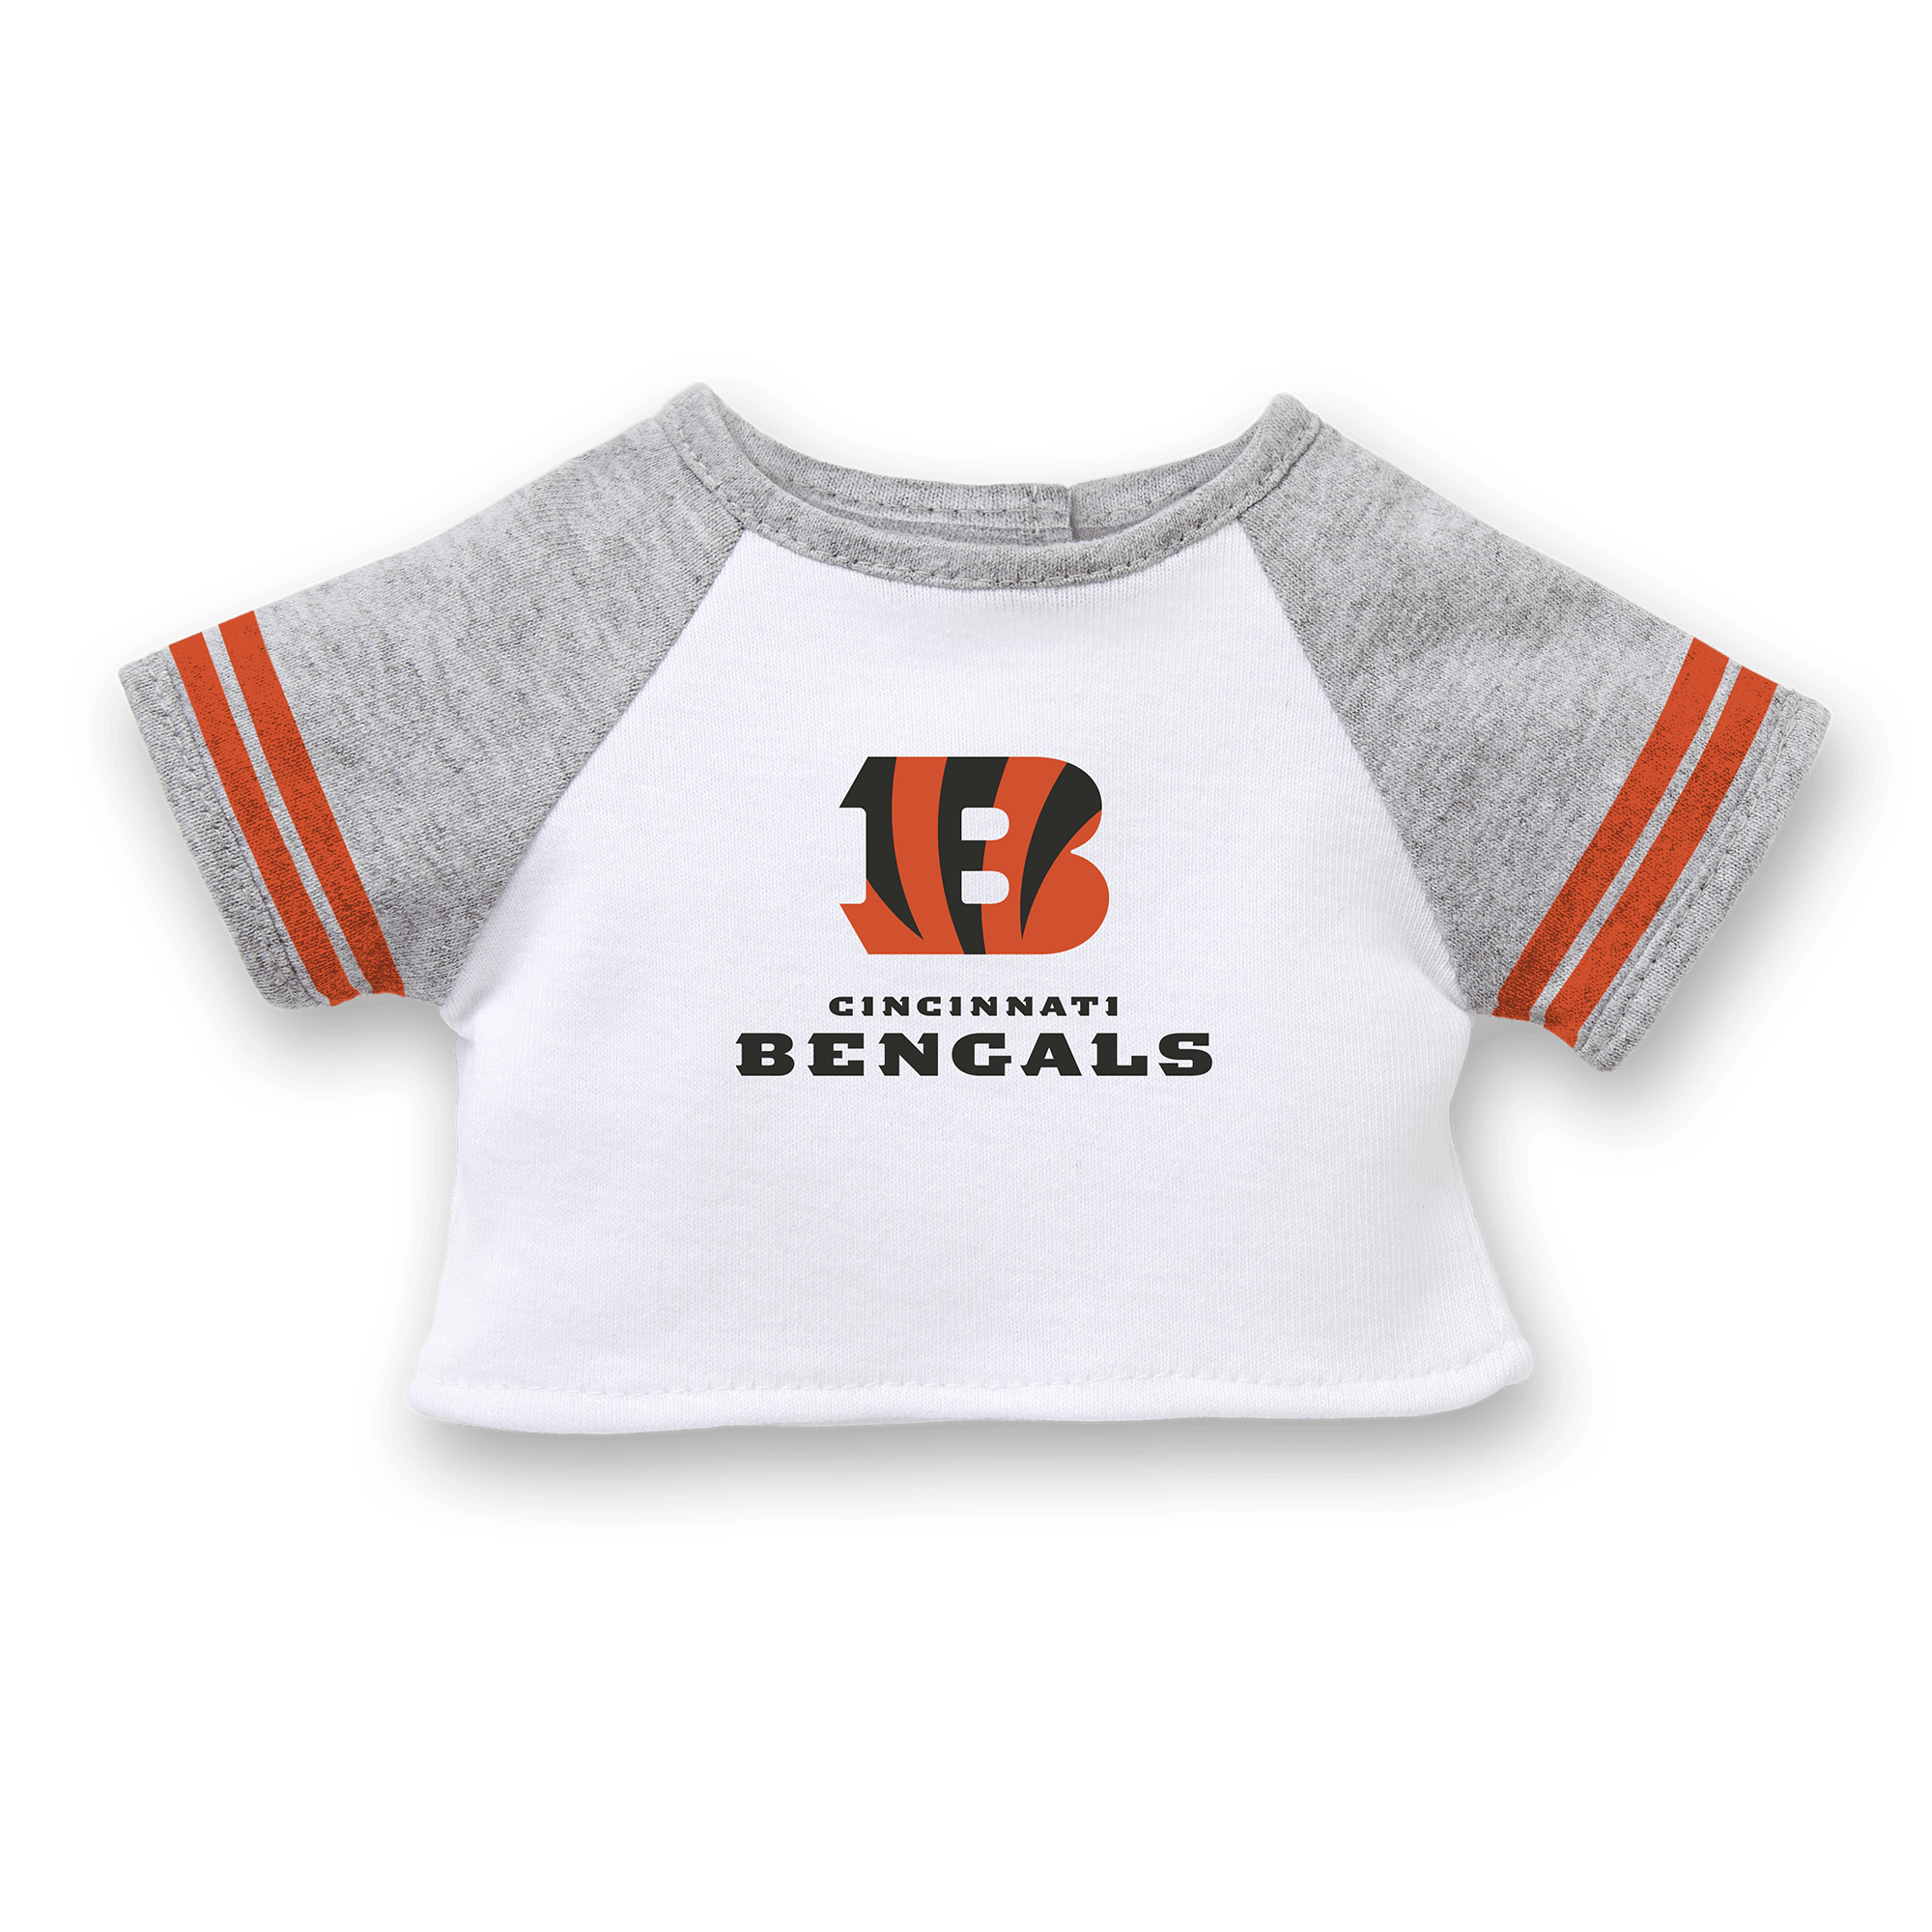 Cincinnati Bengals Merchandise, Bengals Apparel, Jerseys & Gear